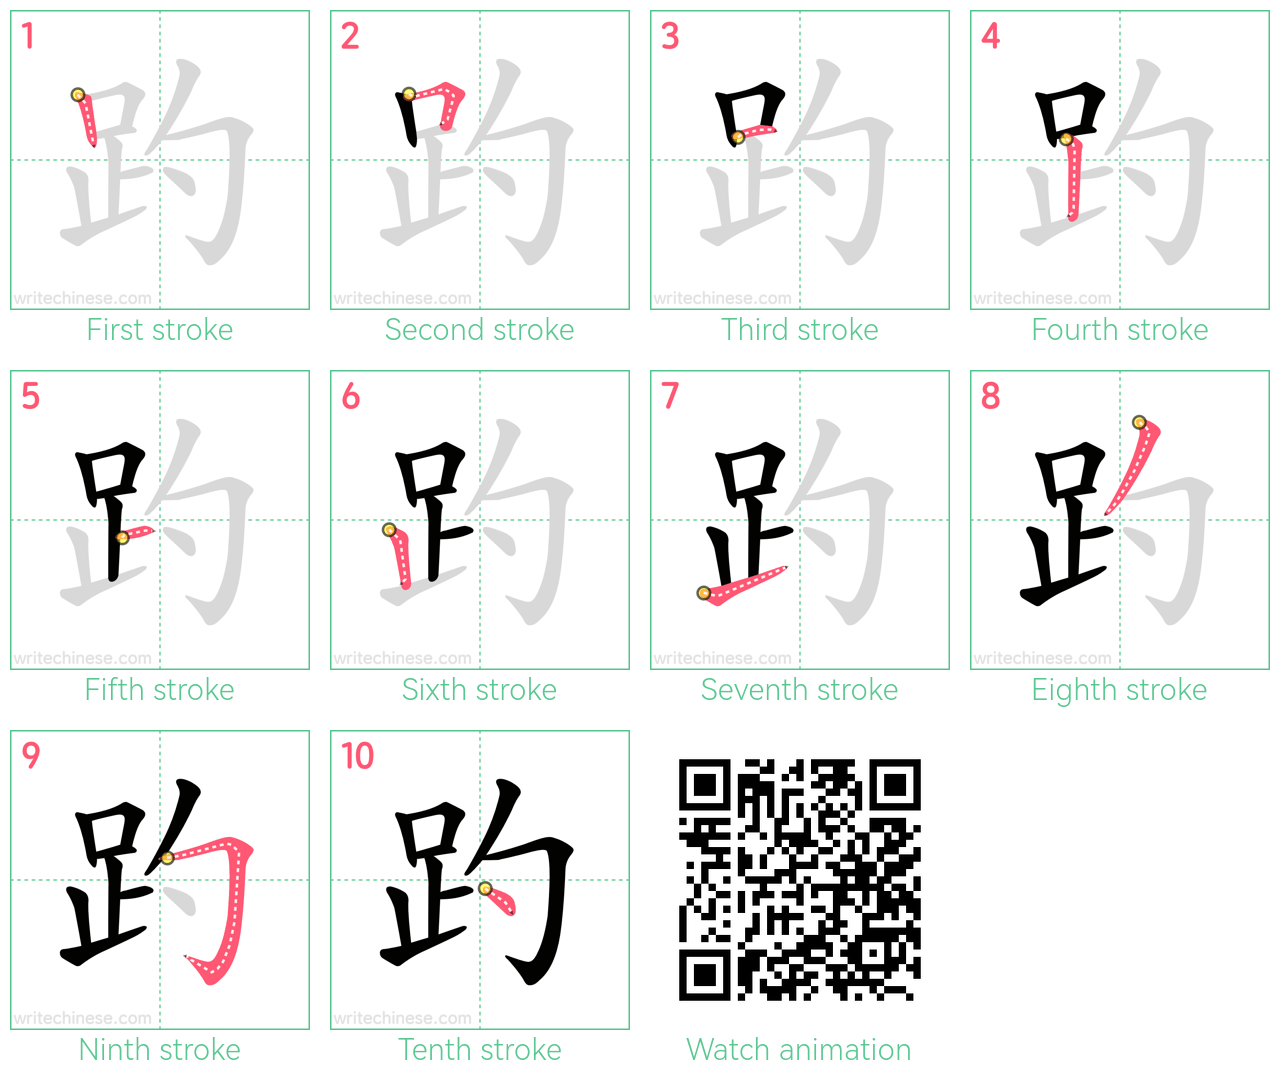 趵 step-by-step stroke order diagrams